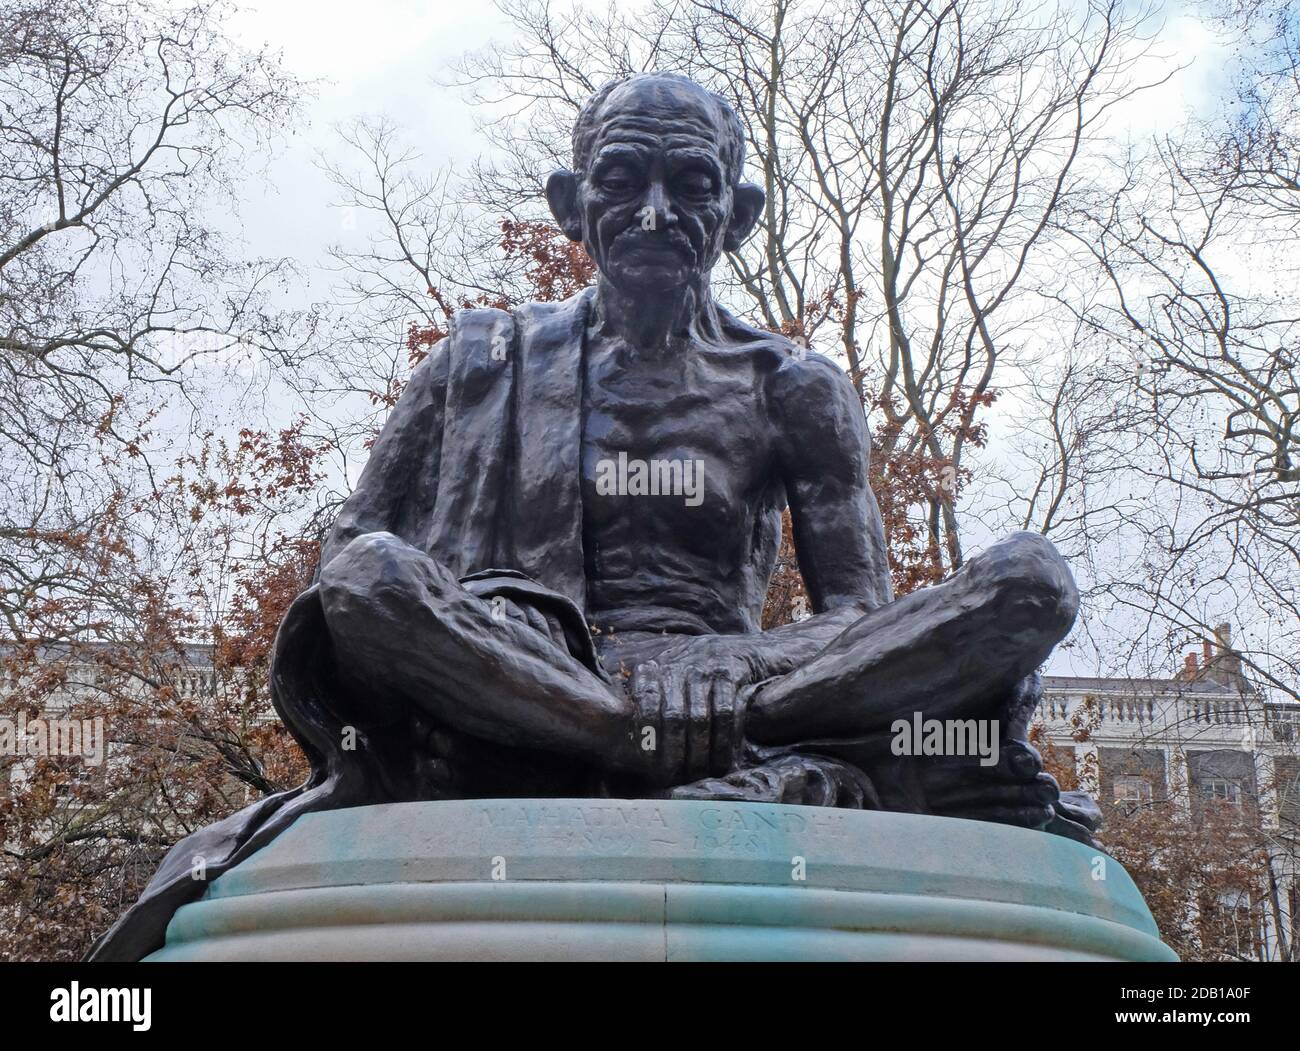 LONDRES, ROYAUME-UNI - 08 avril 2016 : une sculpture de Gandhi assise à pieds croisés par Fredda Brilliant sur la place Tavistock Banque D'Images